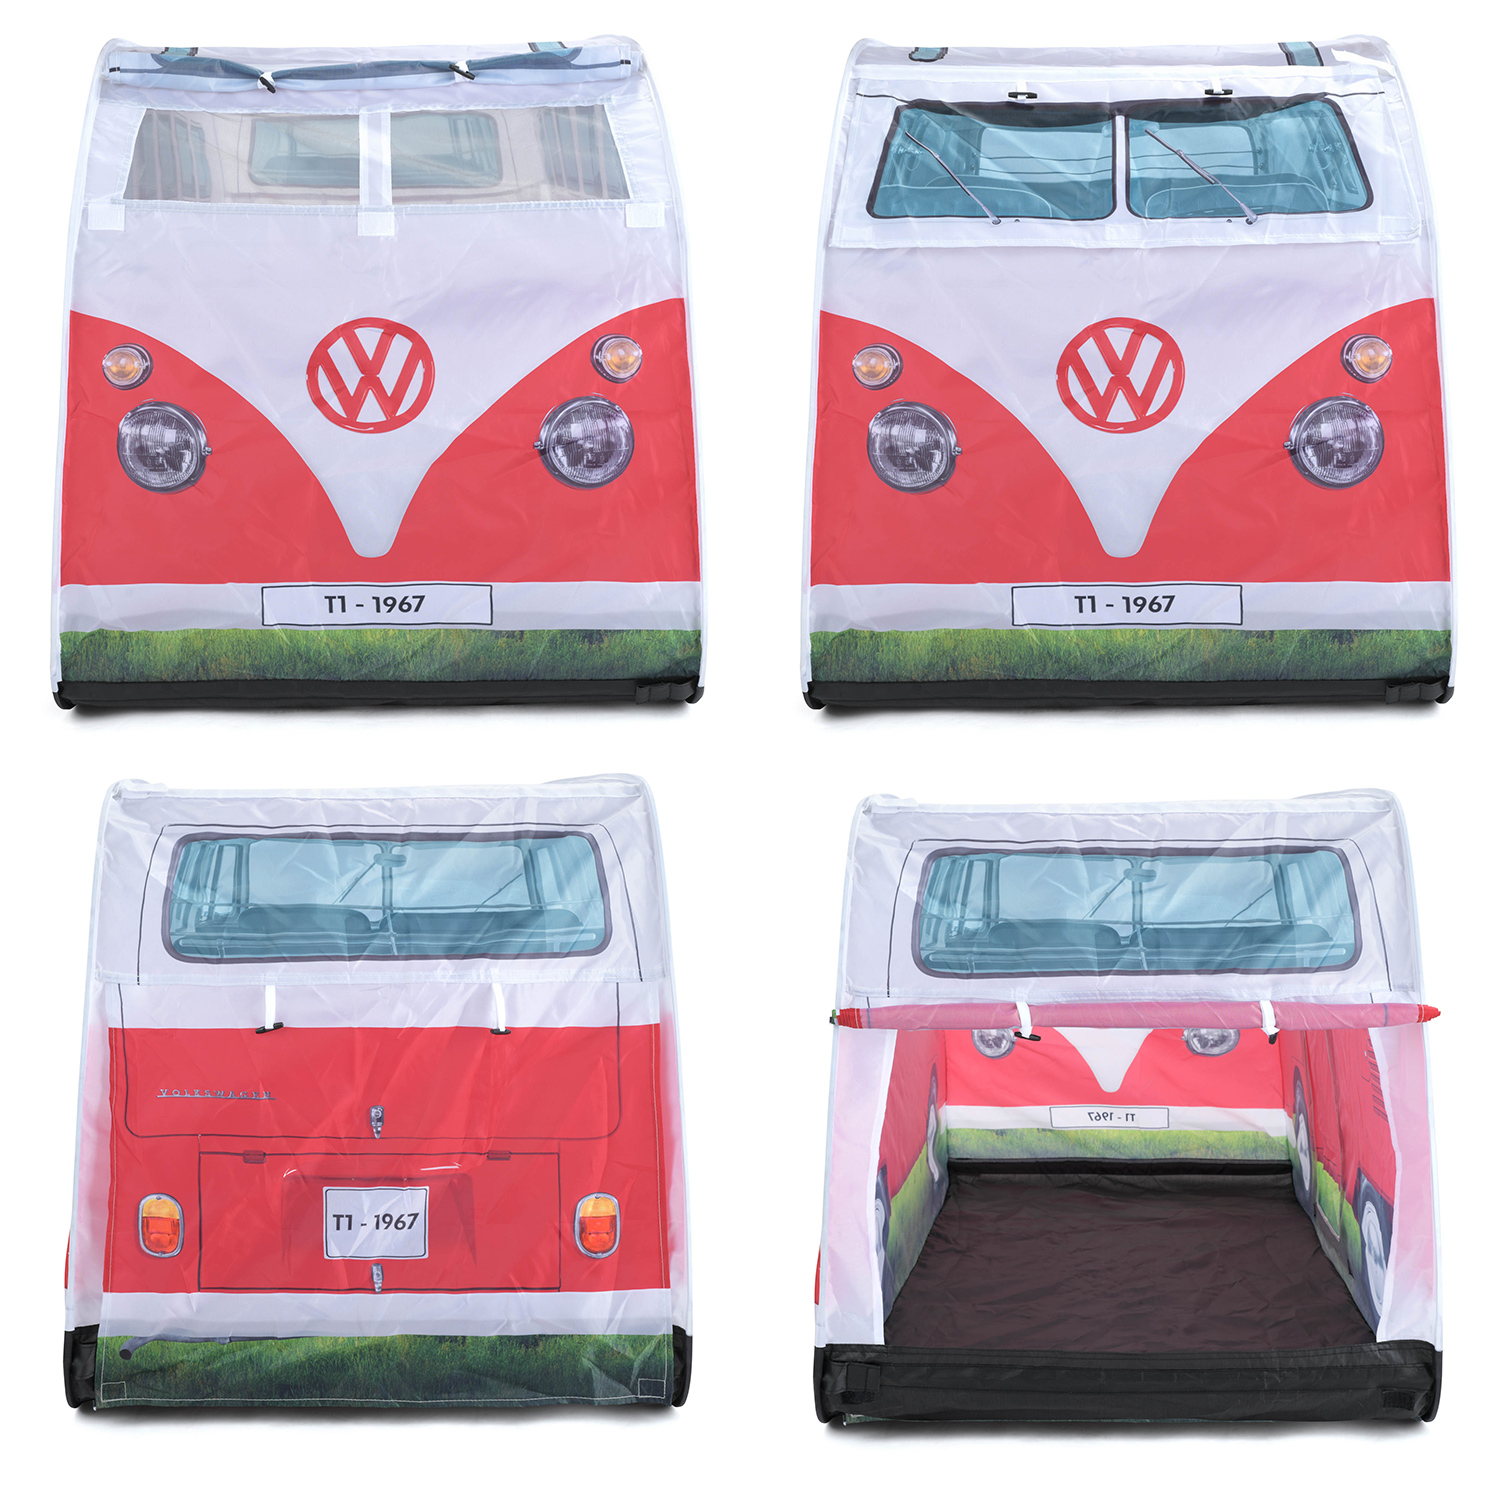 Volkswagen Camper Van children's tent red